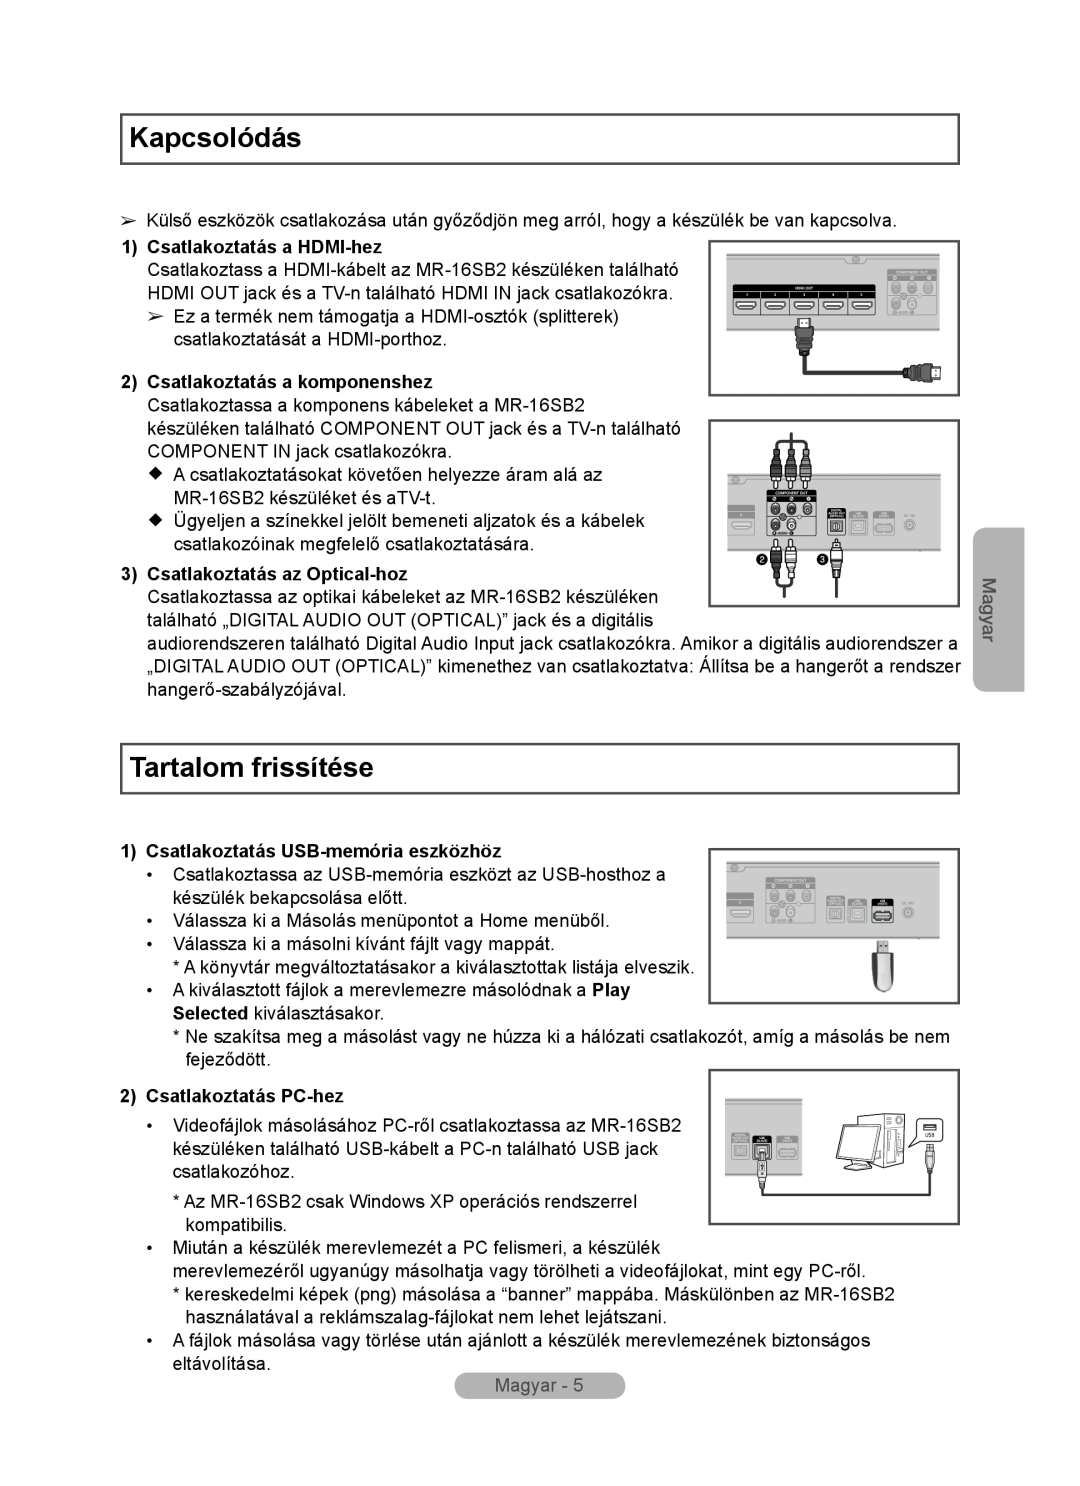 Samsung MR-16SB2 manual Kapcsolódás, Tartalom frissítése, Csatlakoztatás a HDMI-hez, Csatlakoztatás az Optical-hoz, Magyar 